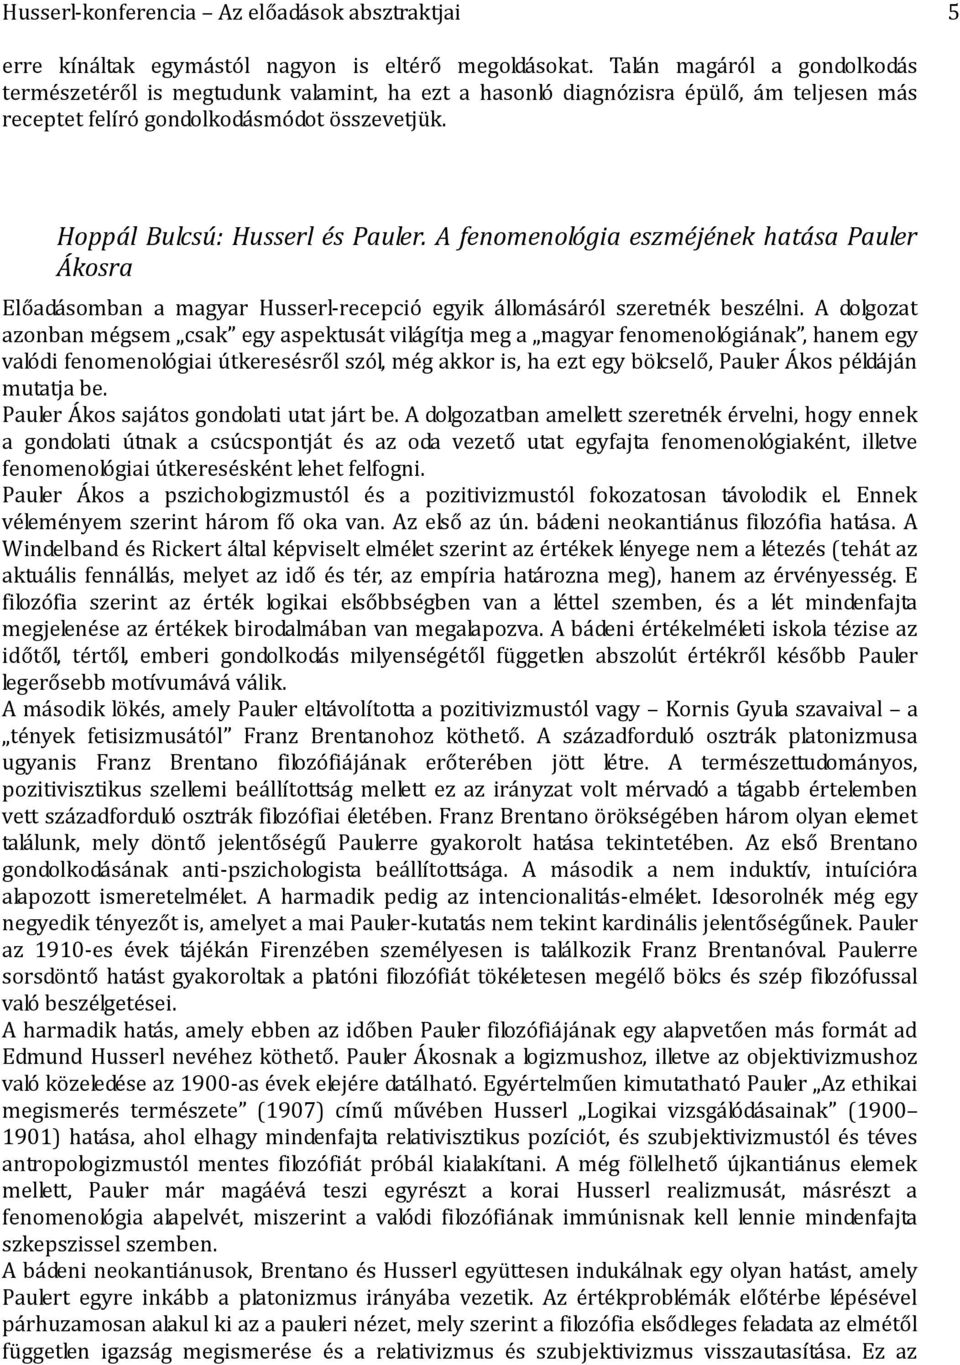 A fenomenológia eszméjének hatása Pauler Ákosra Előadásomban a magyar Husserl-recepció egyik állomásáról szeretnék beszélni.